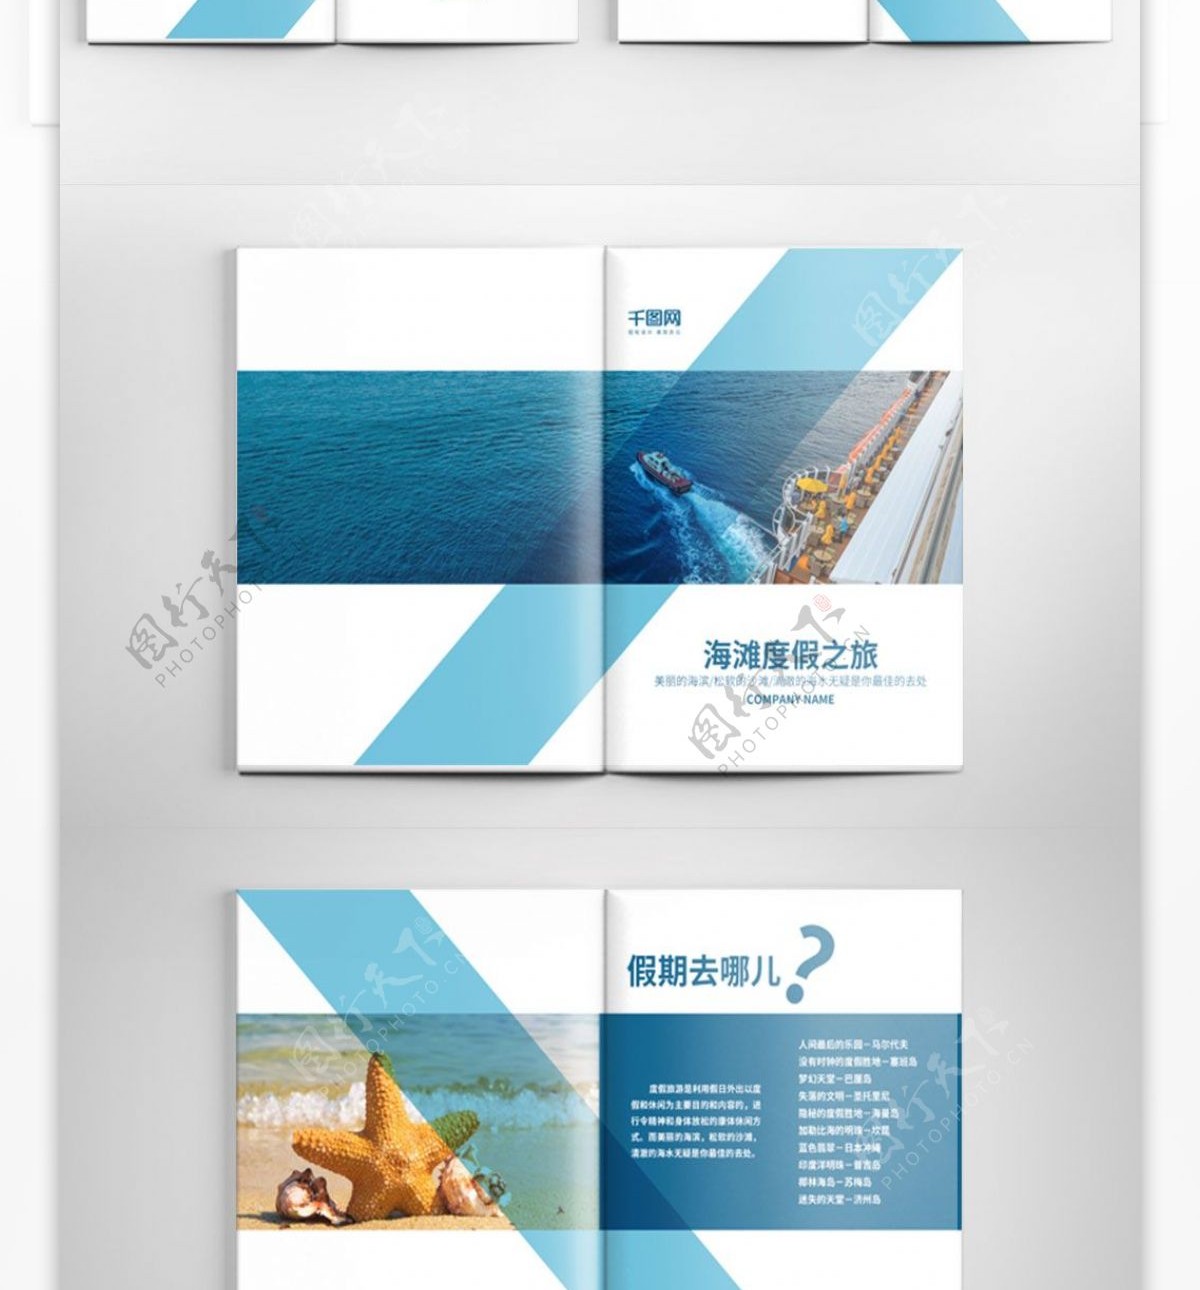 创意蓝色海滩度假画册设计PSD模板